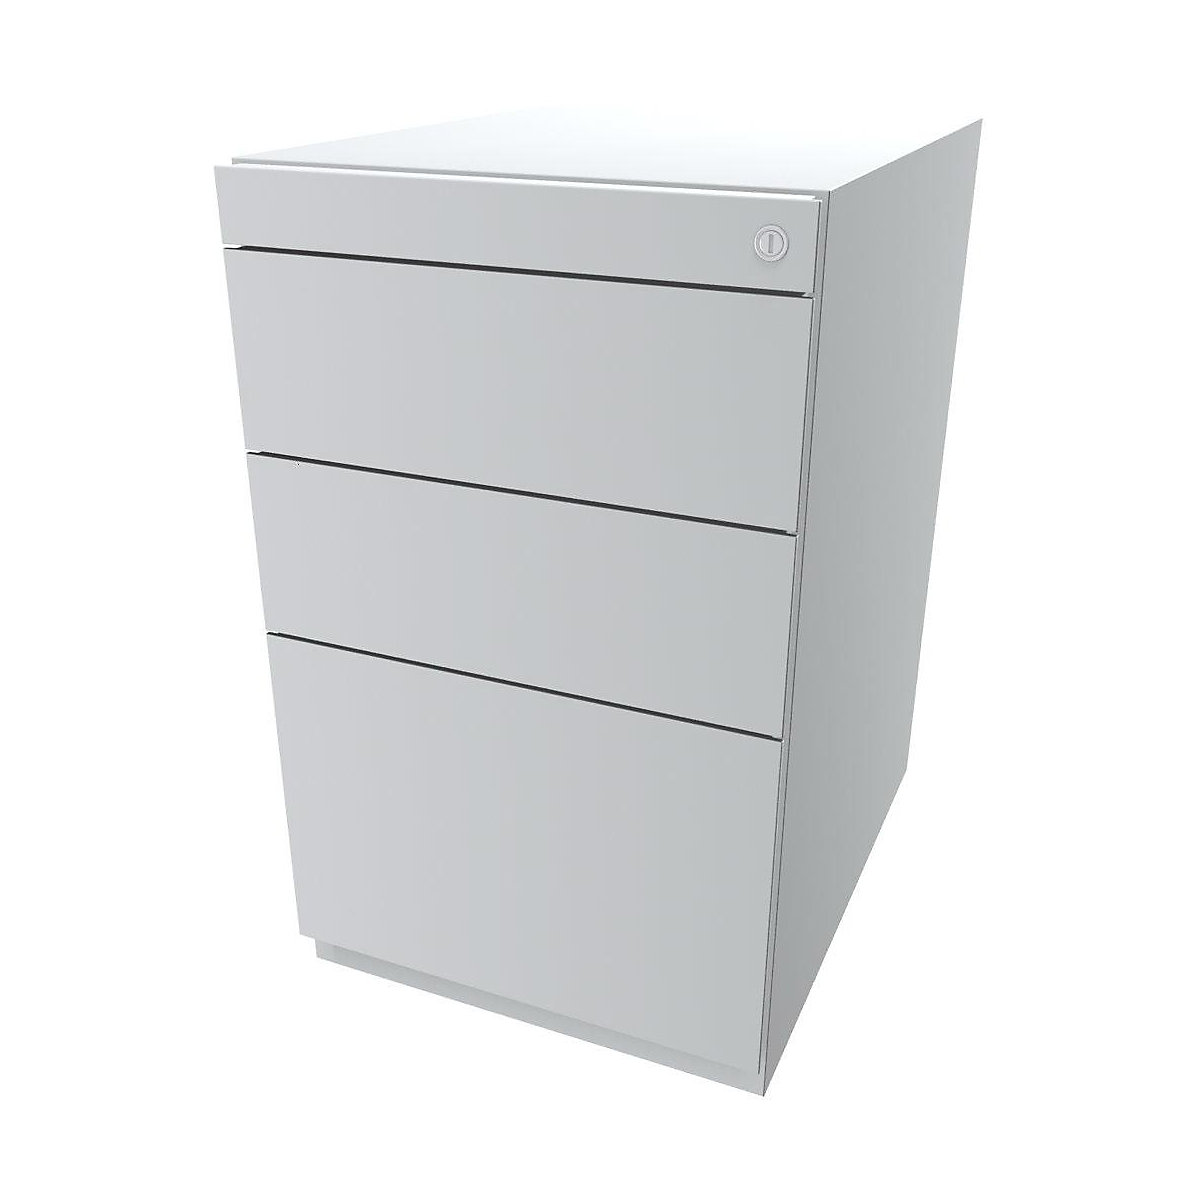 BISLEY Standcontainer Note™, mit 2 Universalschubladen, 1 Hängeregistratur, ohne Top, Tiefe 565 mm, verkehrsweiß